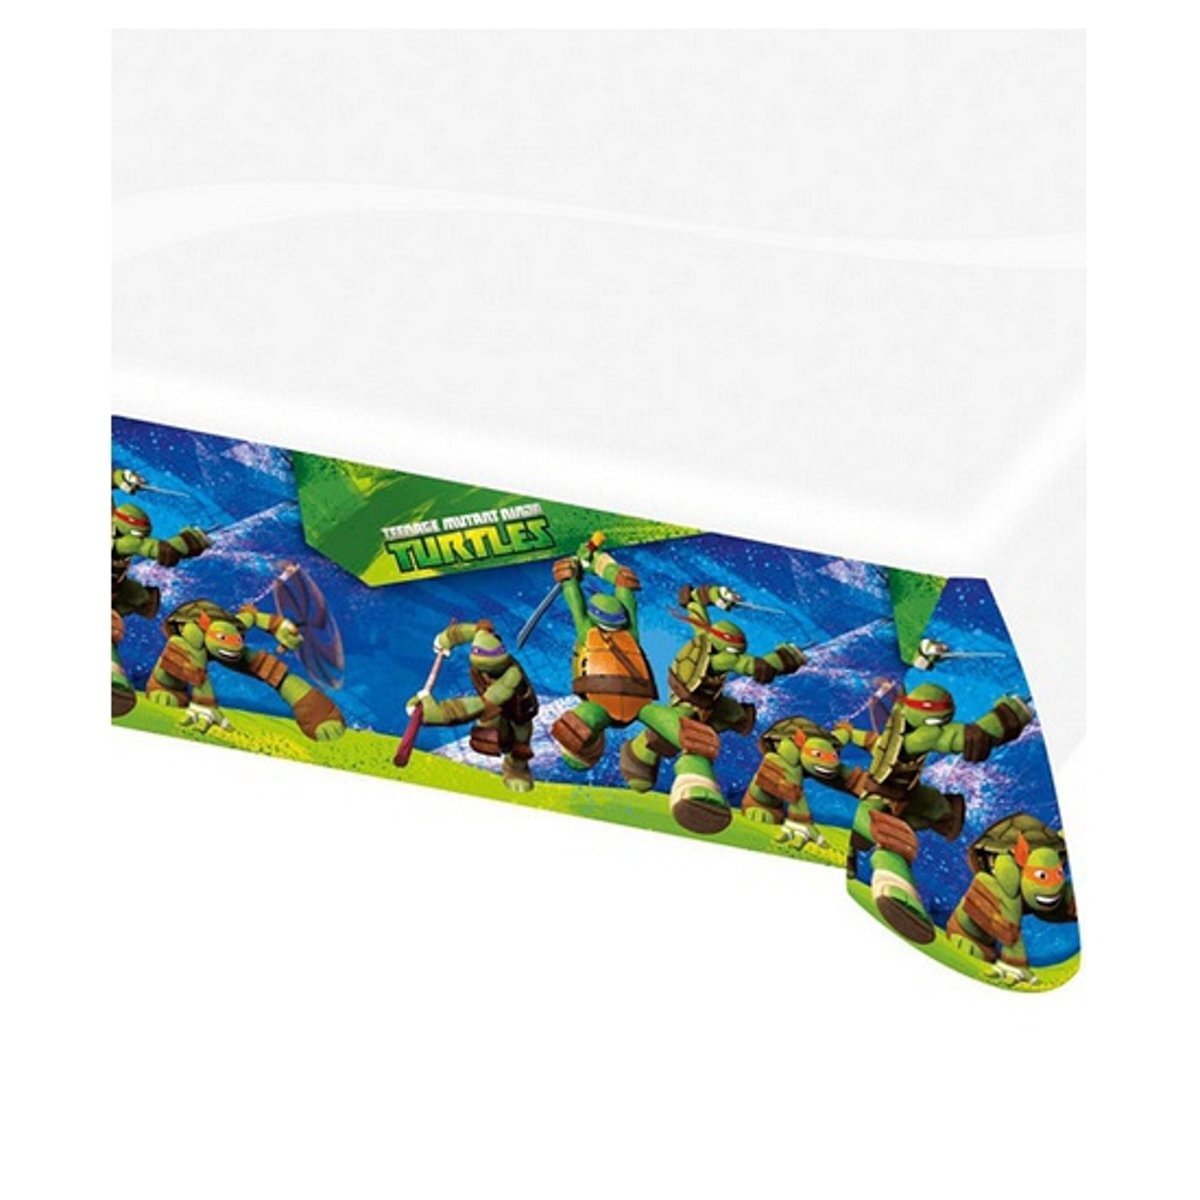 Teenage Mutant Ninja Turtles Ninja Turtles tafelkleed 120 x 180 cm